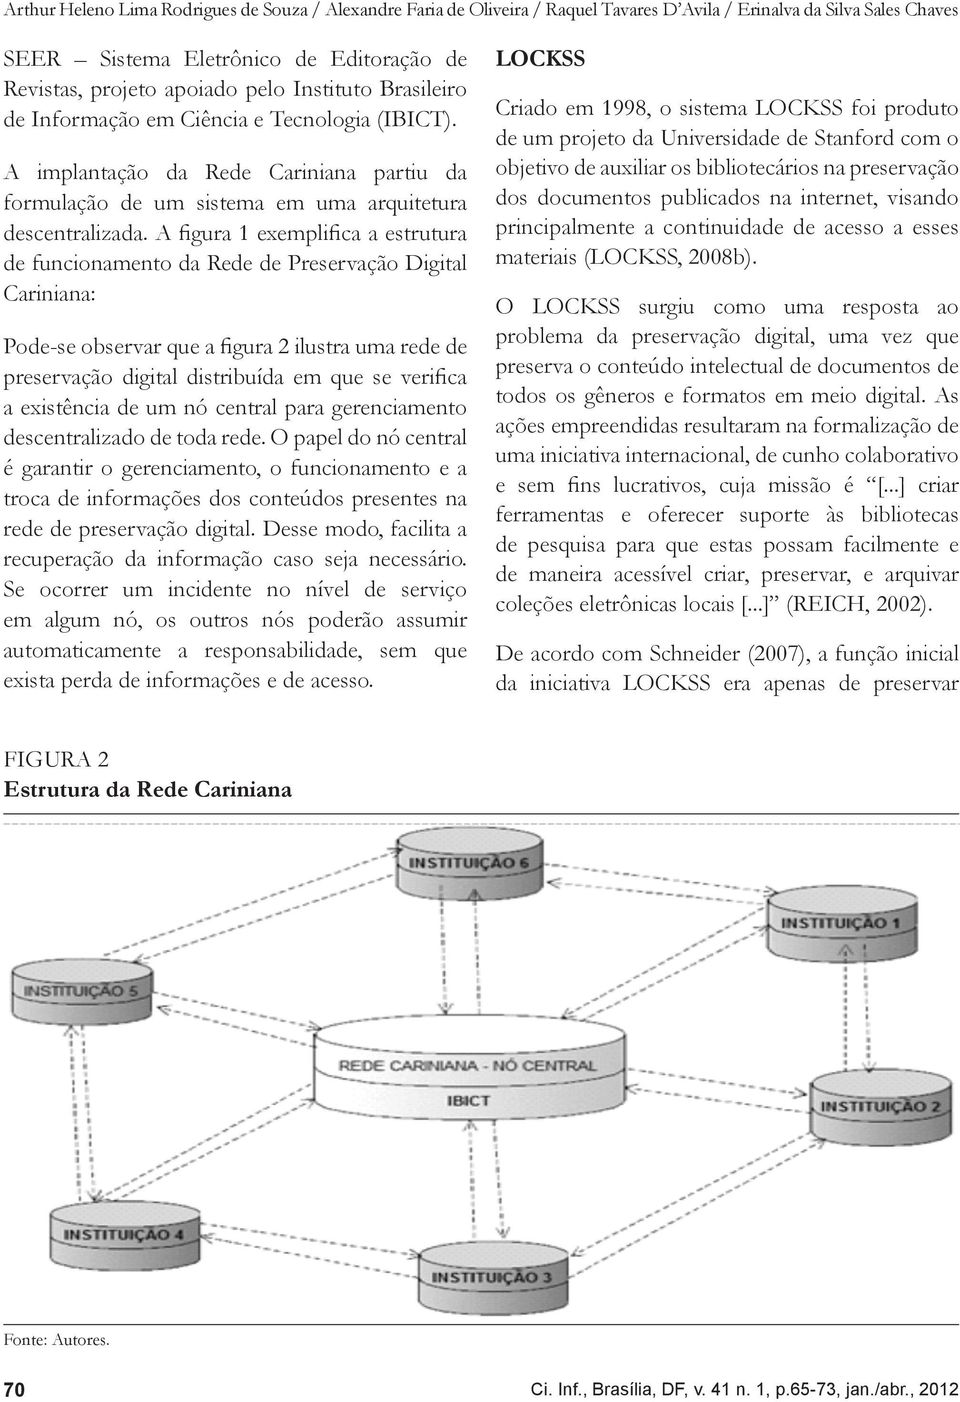 A figura 1 exemplifica a estrutura de funcionamento da Rede de Preservação Digital Cariniana: Pode-se observar que a figura 2 ilustra uma rede de preservação digital distribuída em que se verifica a